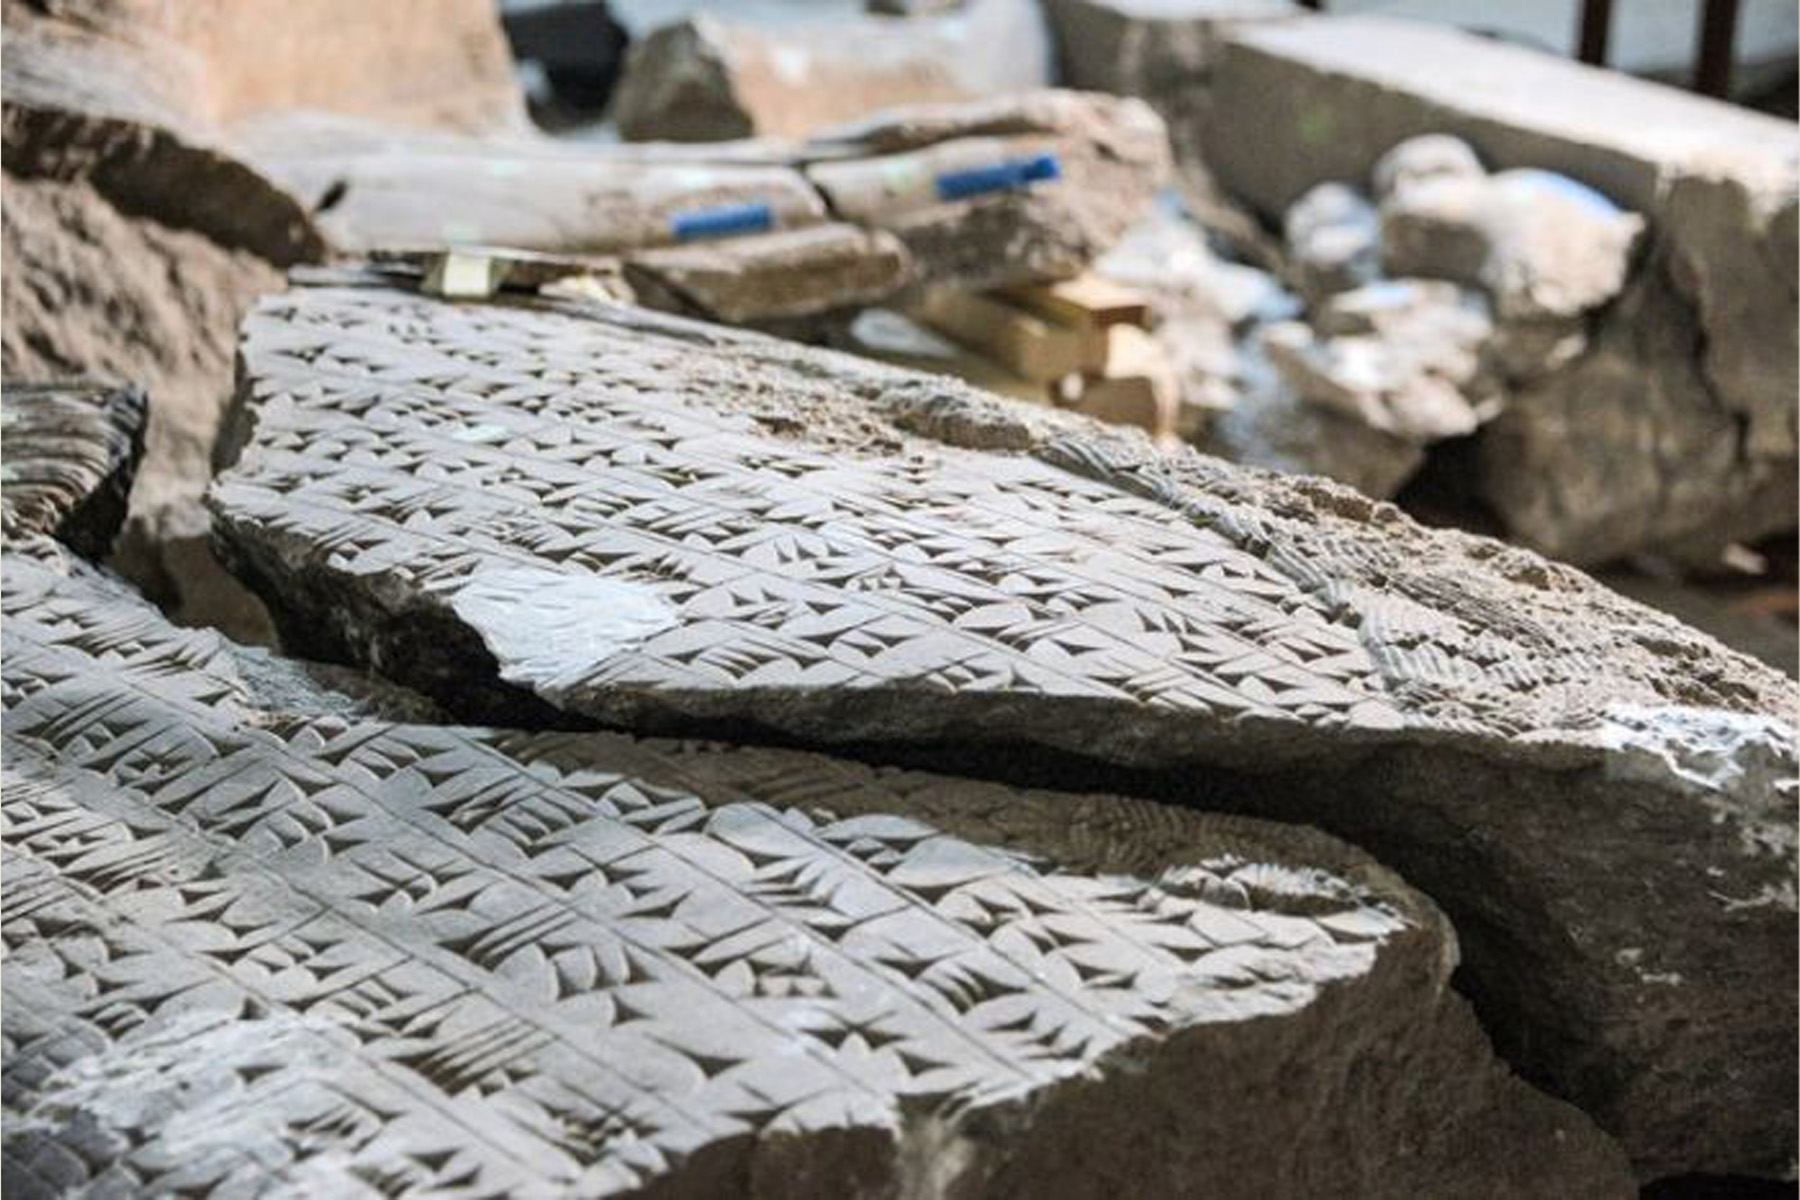 في متحف الموصل عملية دؤوبة لترميم قطع أثرية دمّرها تنظيم الدولة الاسلامية